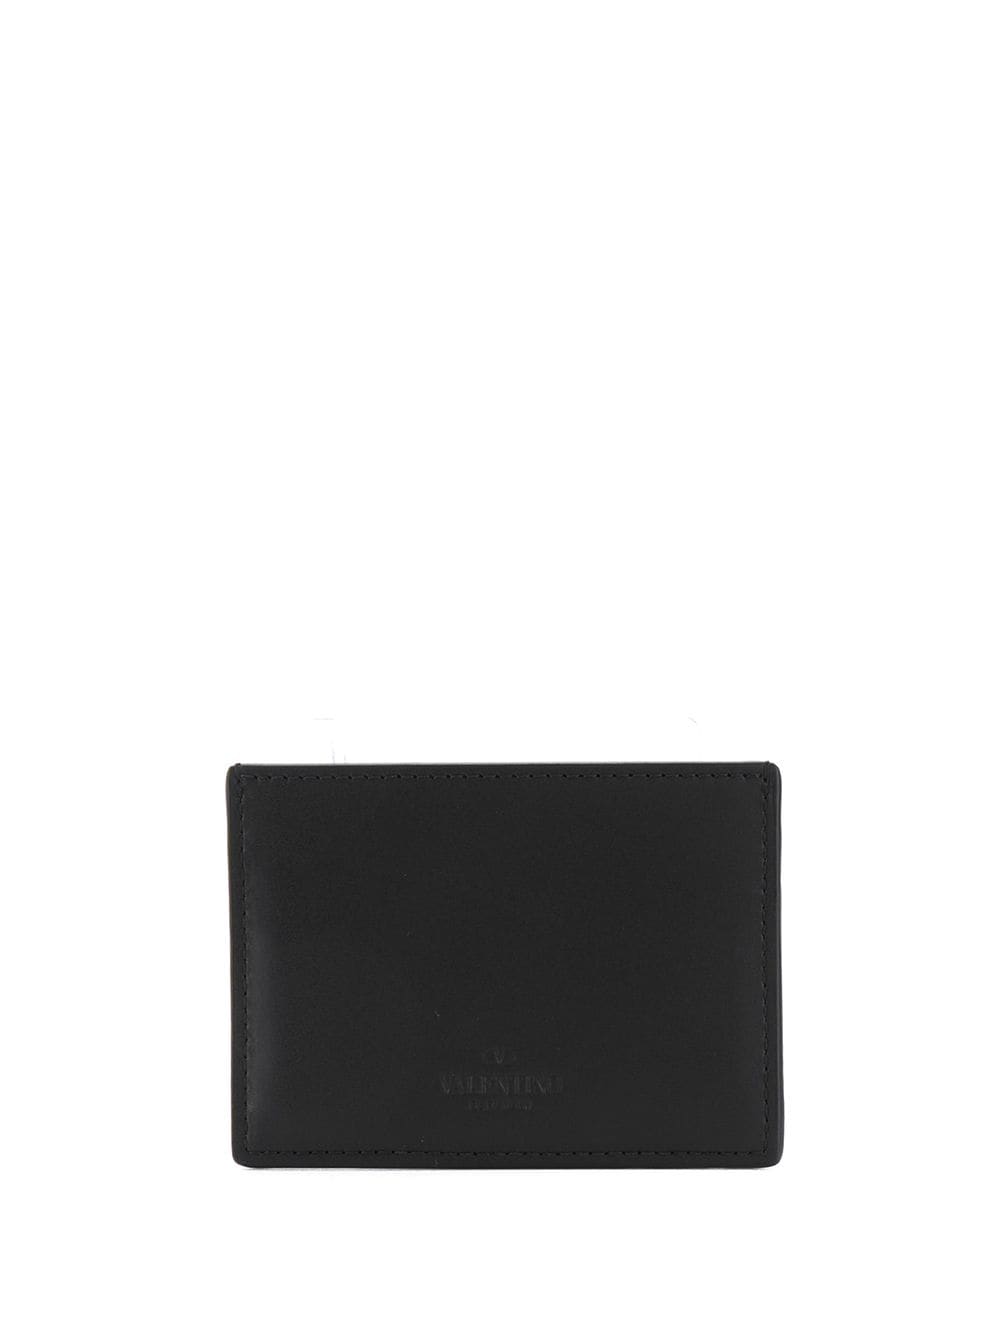 Black leather VLTN logo print cardholder